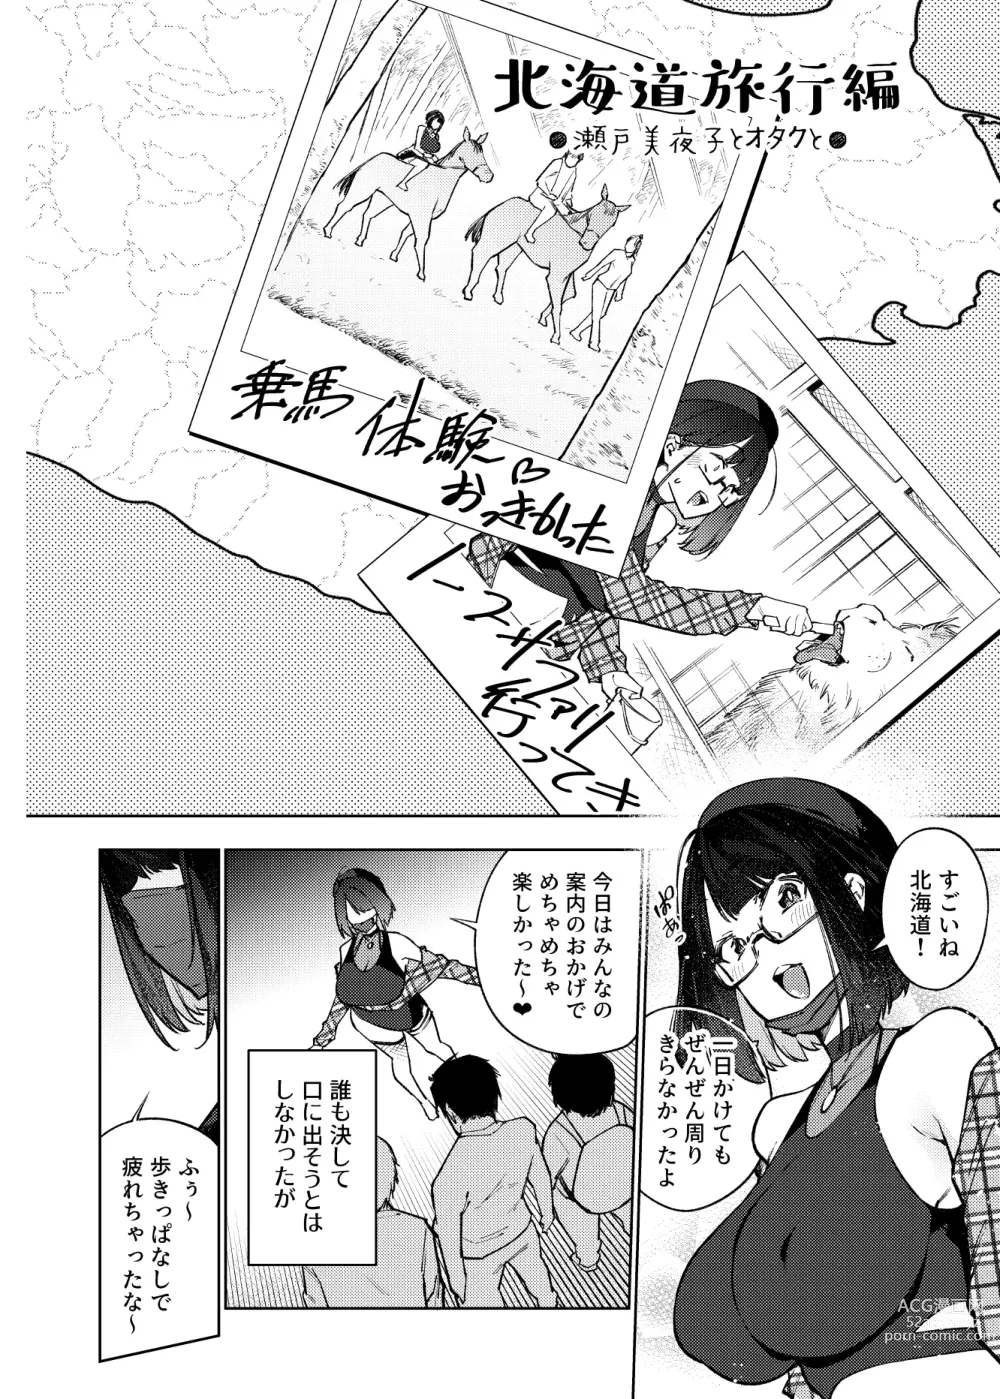 Page 5 of doujinshi JK Haishinsha desu ga Otaku to Pakoccha Dame nan desu ka?